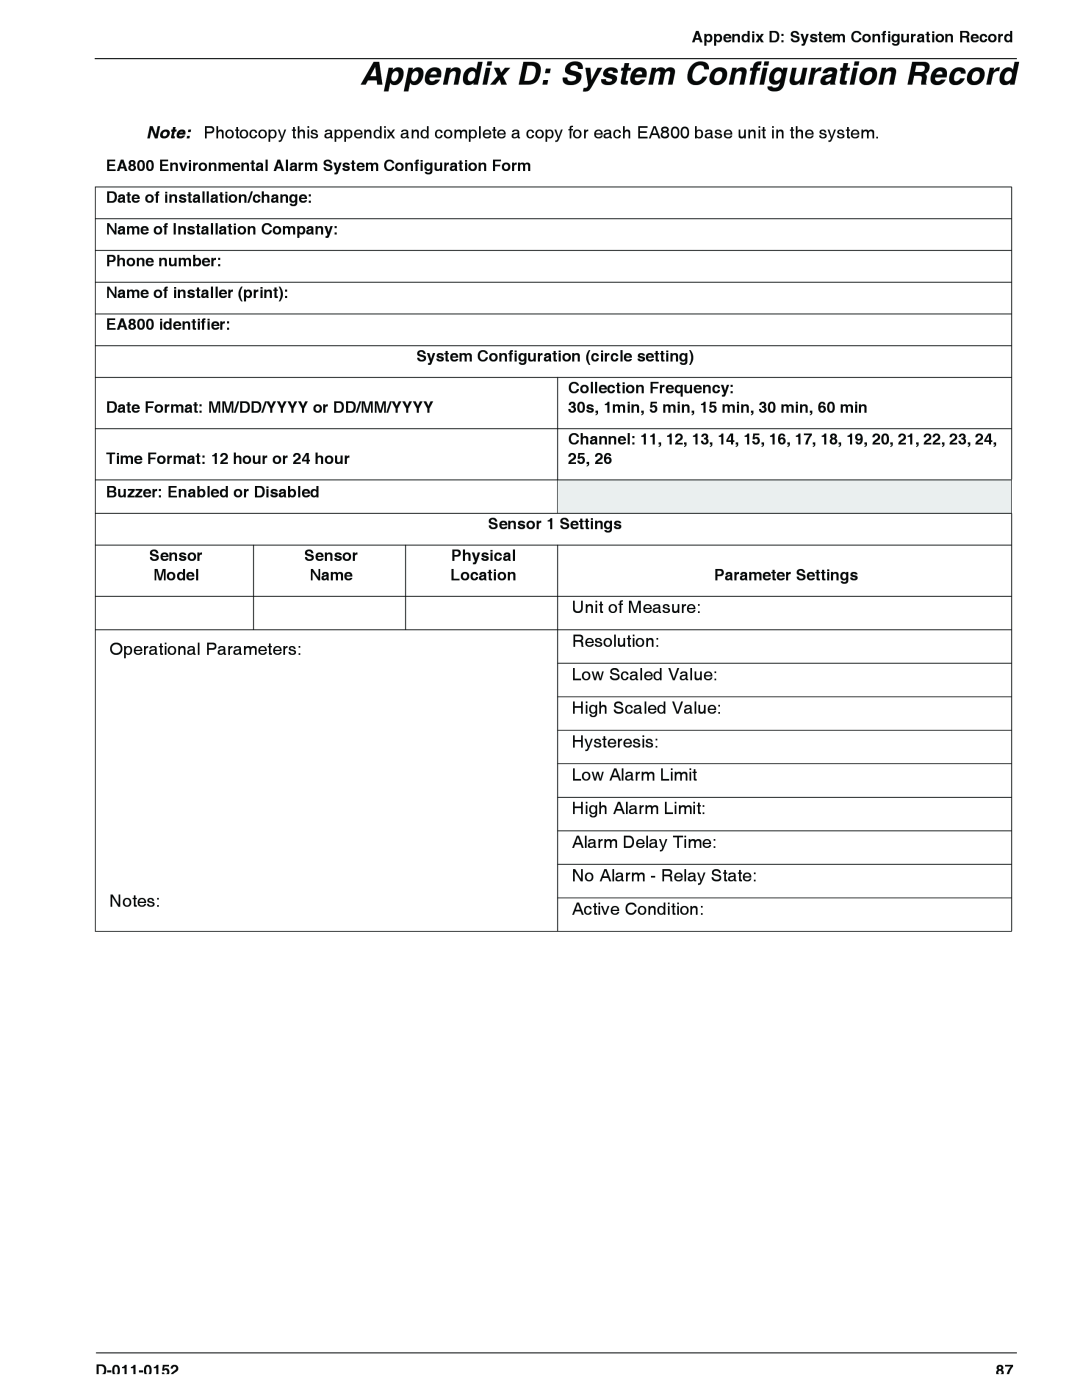 Enviro EA800 owner manual Appendix D System Configuration Record 